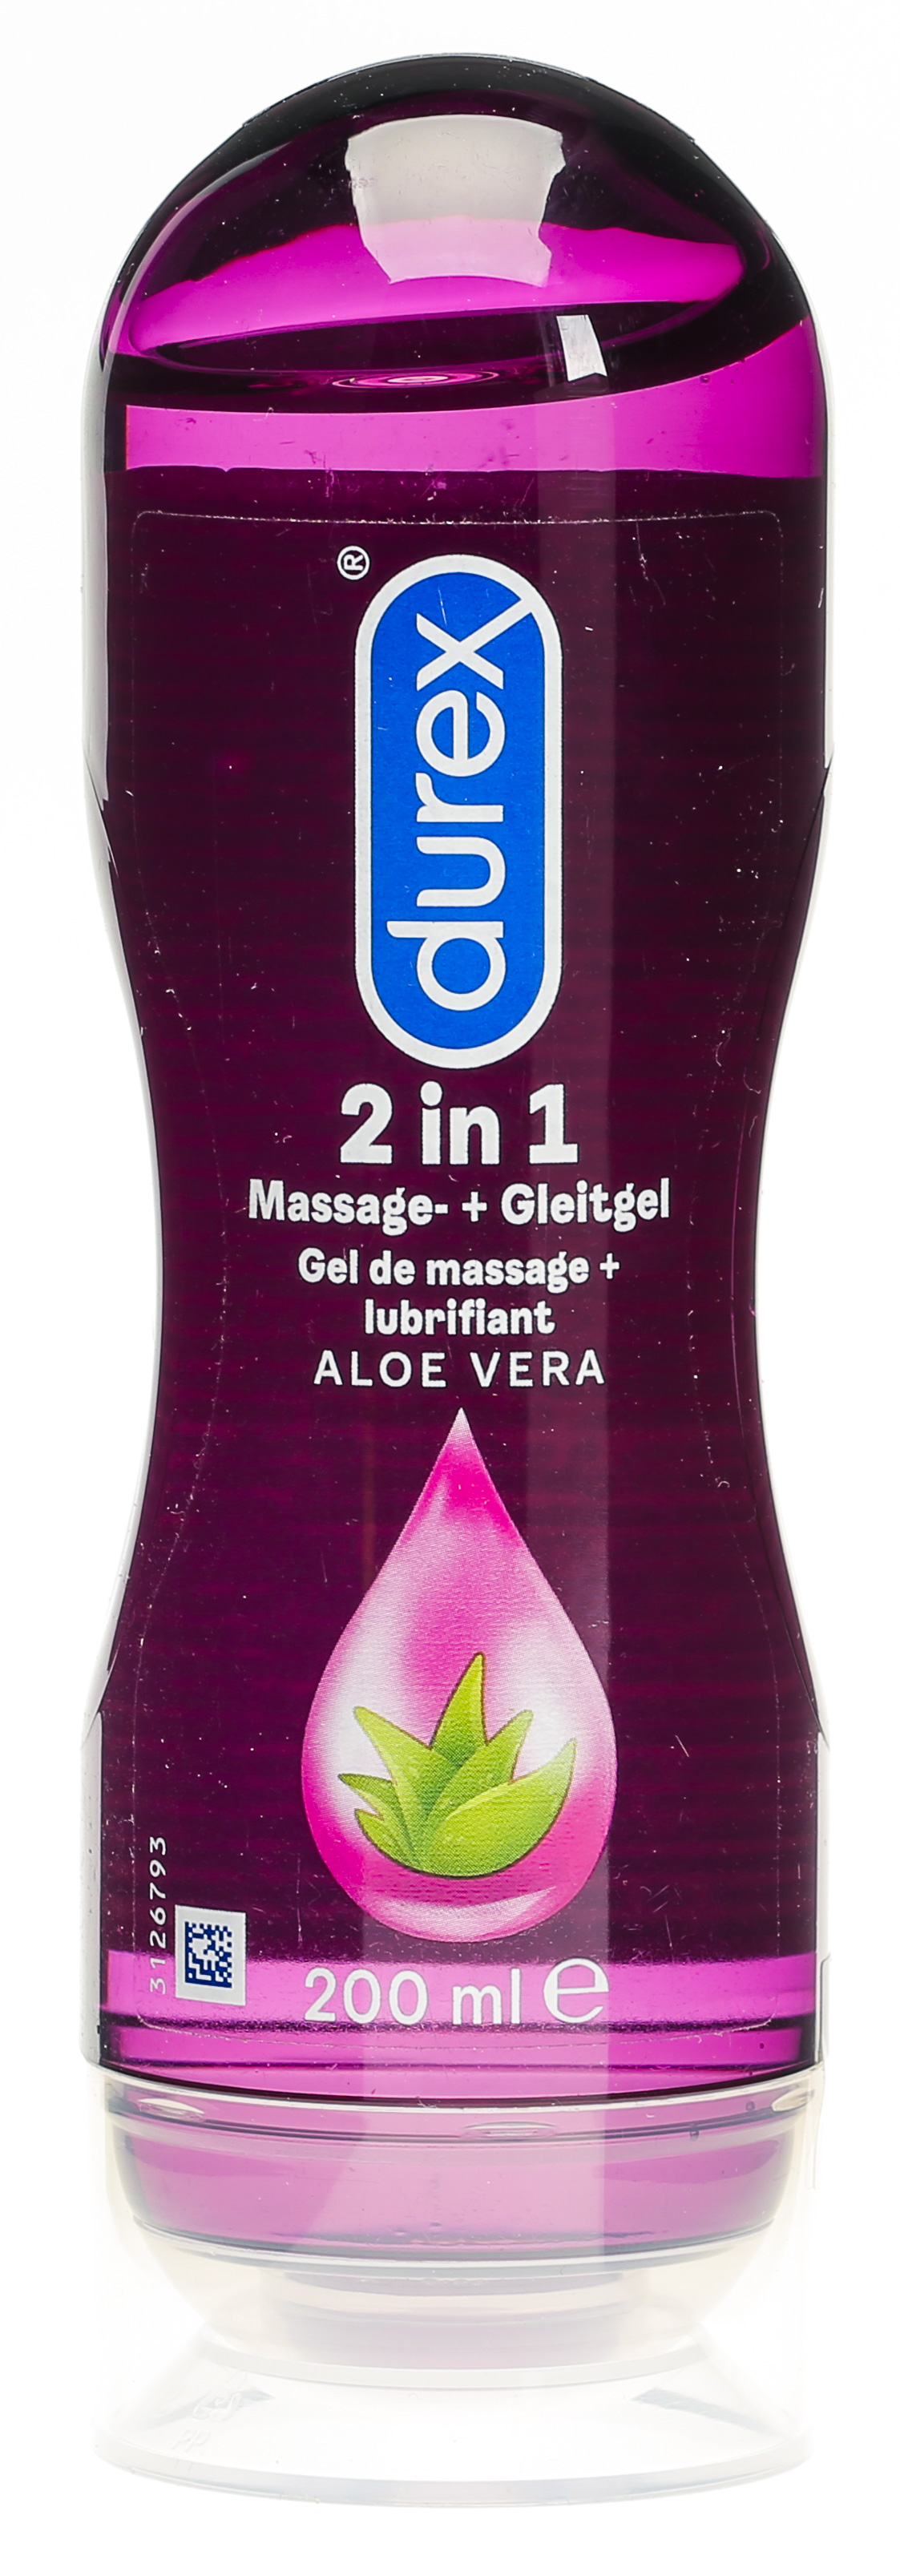 Durex Play Massage- Gleitgel 2in1 Aloe Vera 200 ml